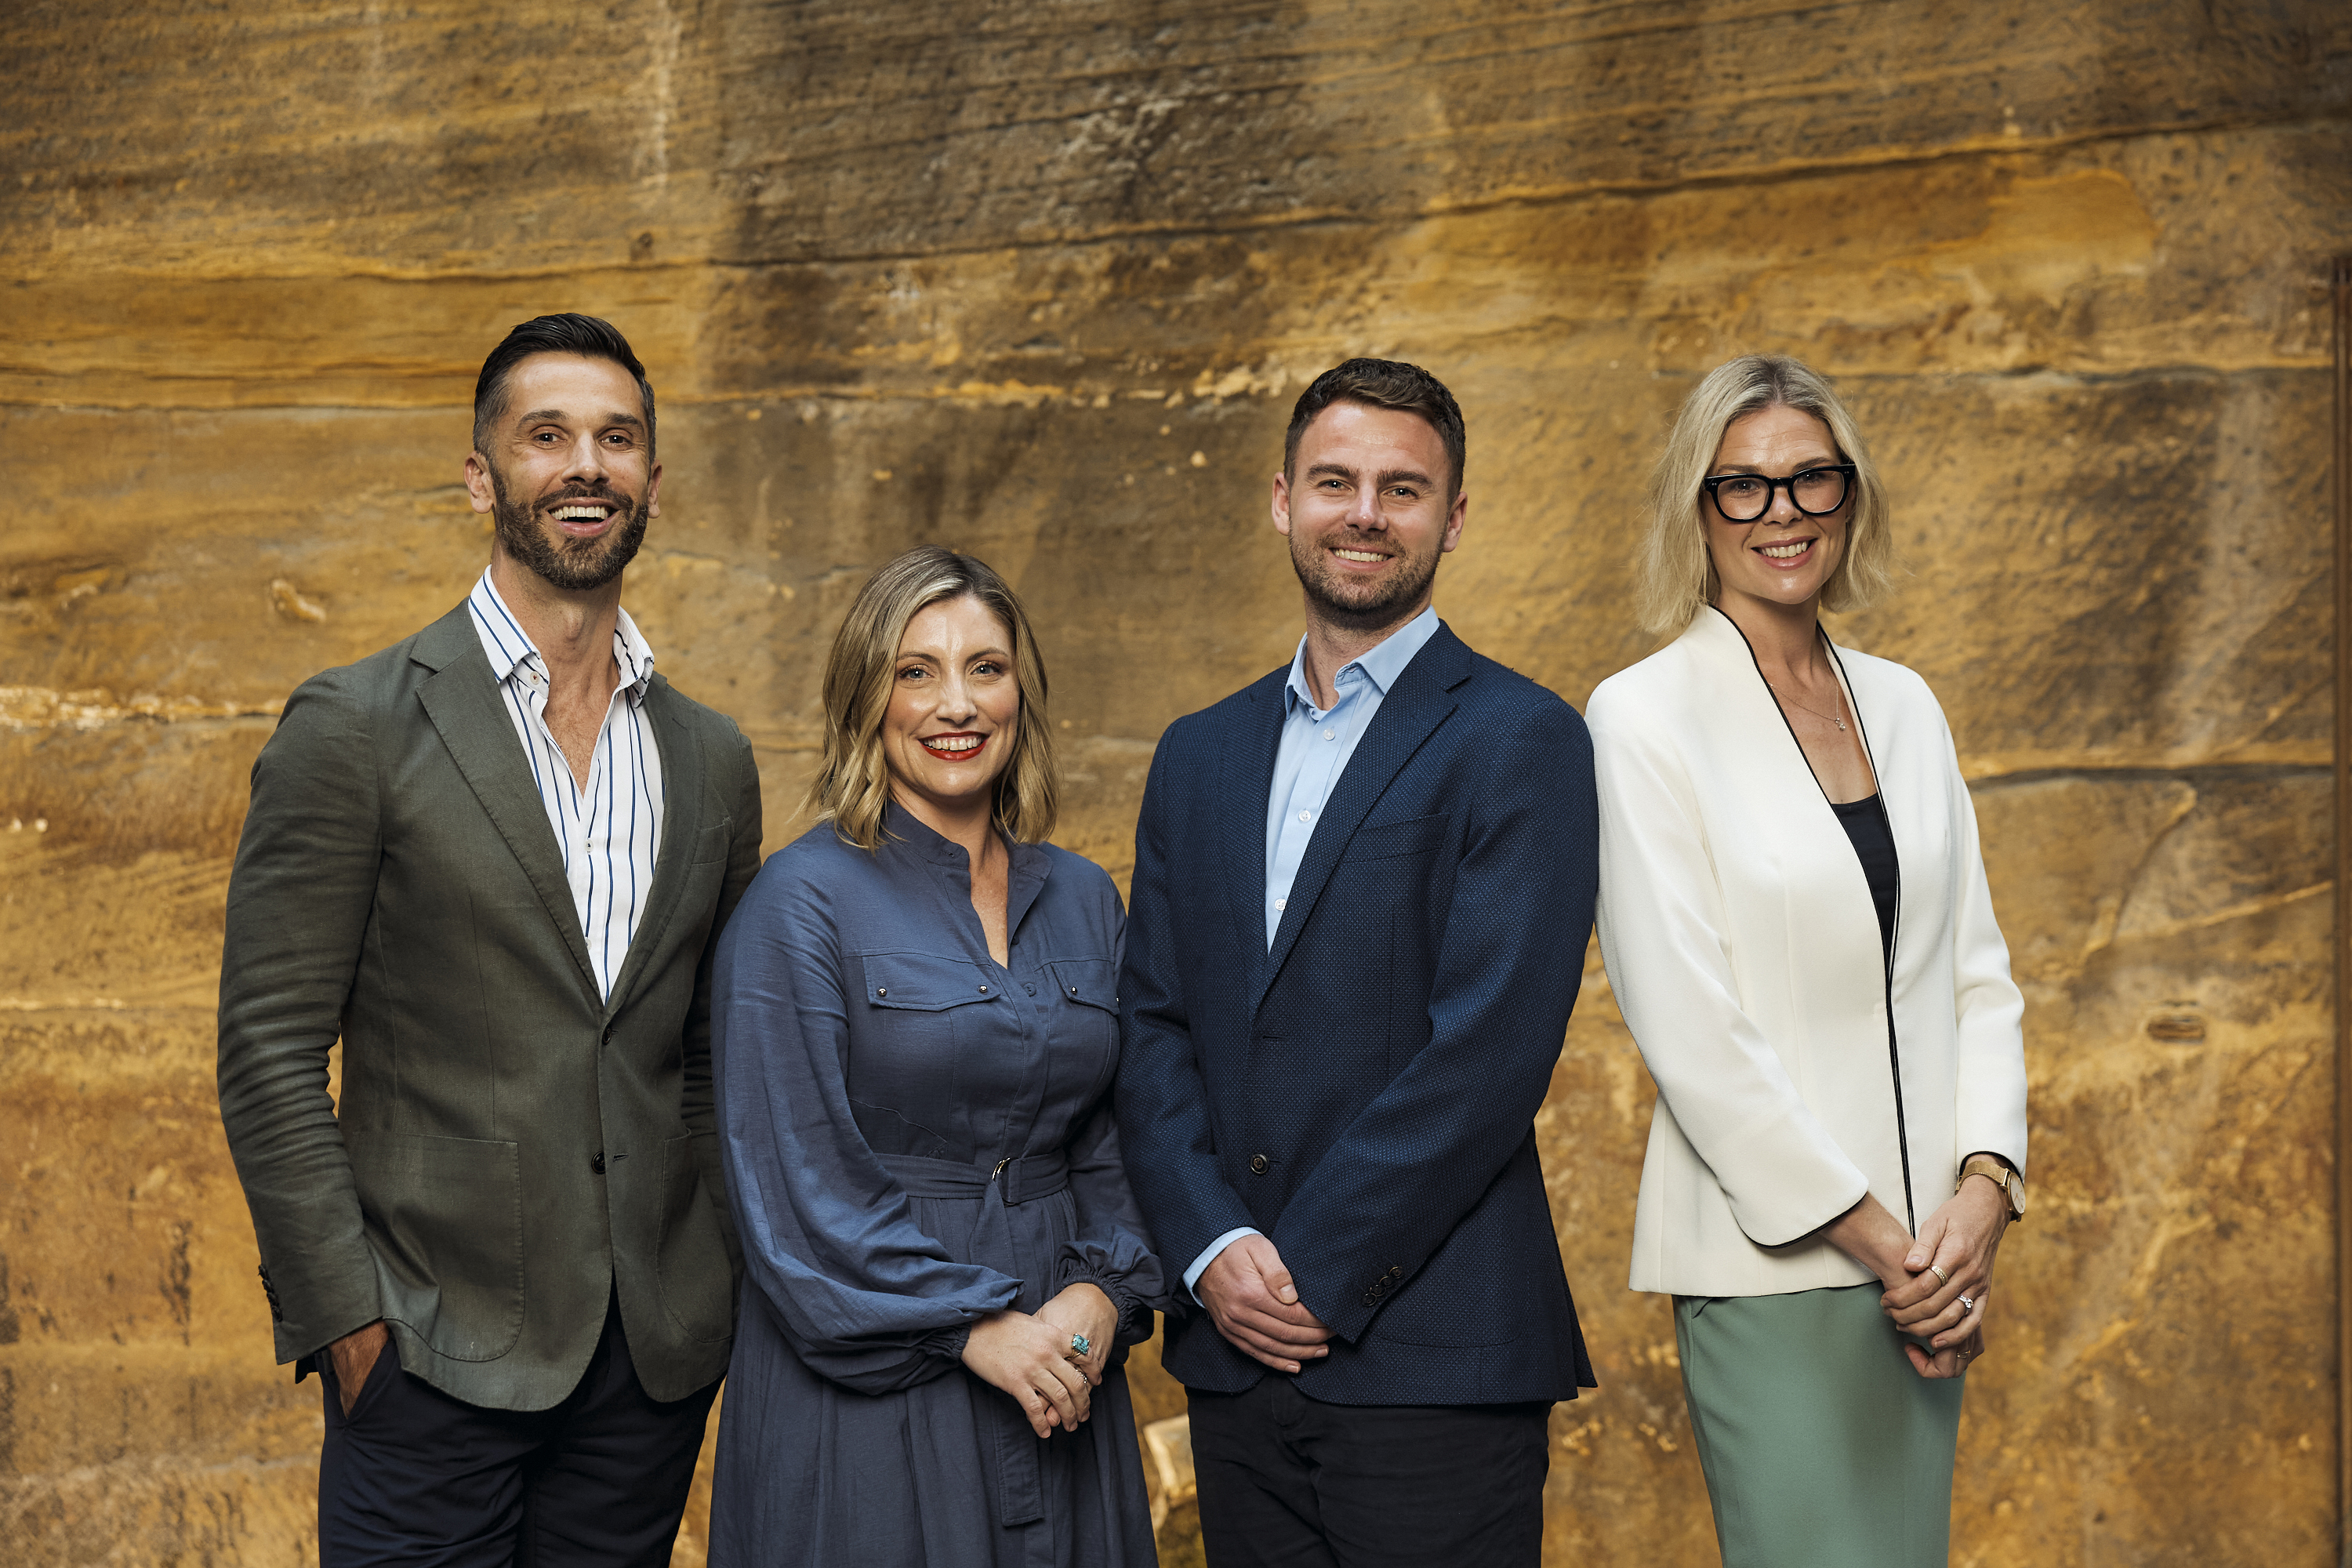 Ogilvy PR's Jacquie Potter Joins Aldi Australia As Director Of Communications